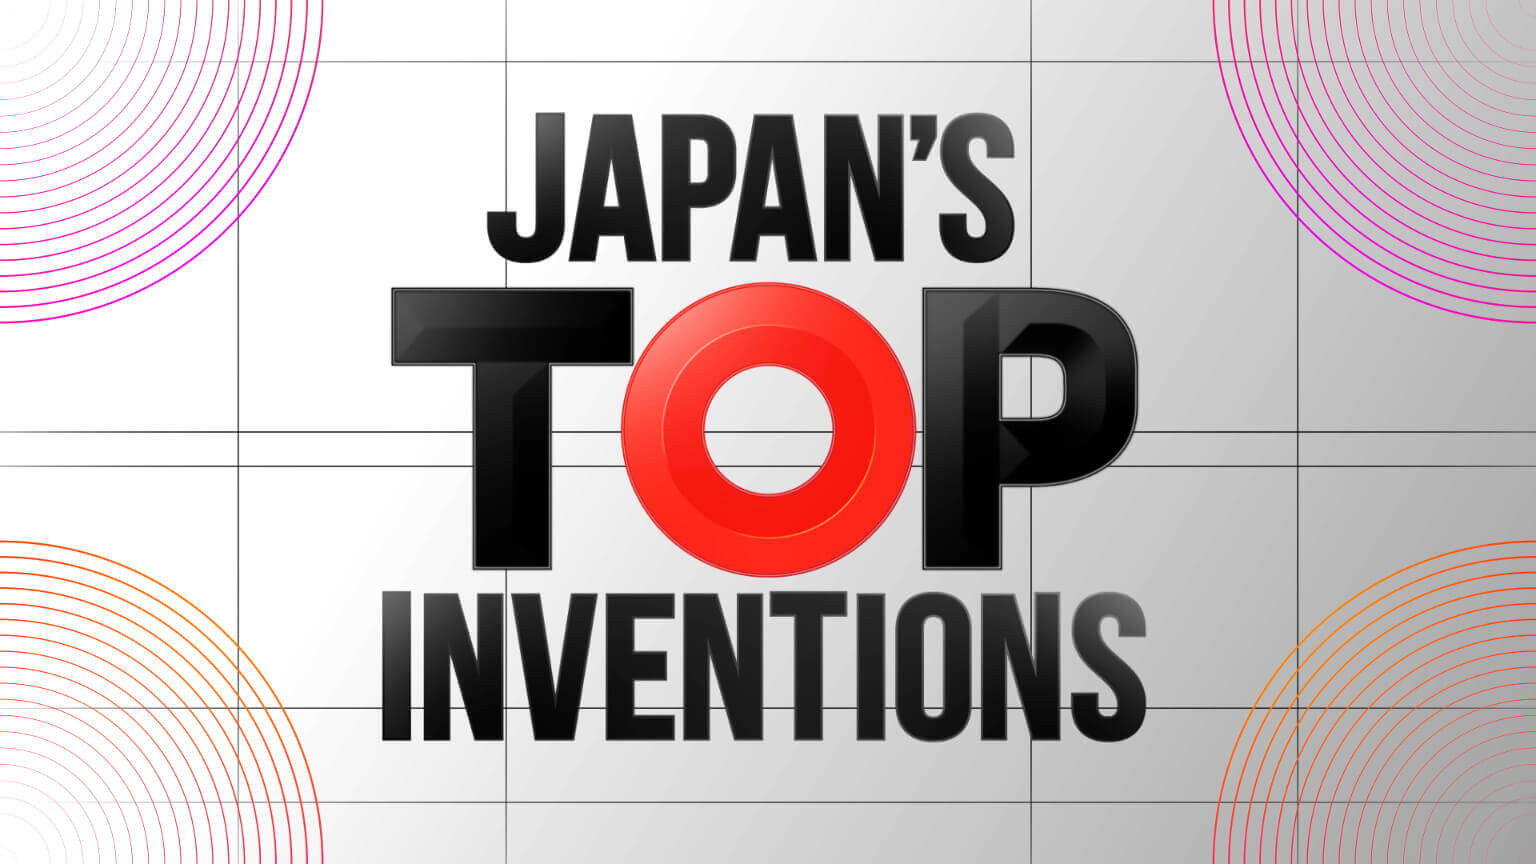 日本顶级发明 
Japan's Top Inventions